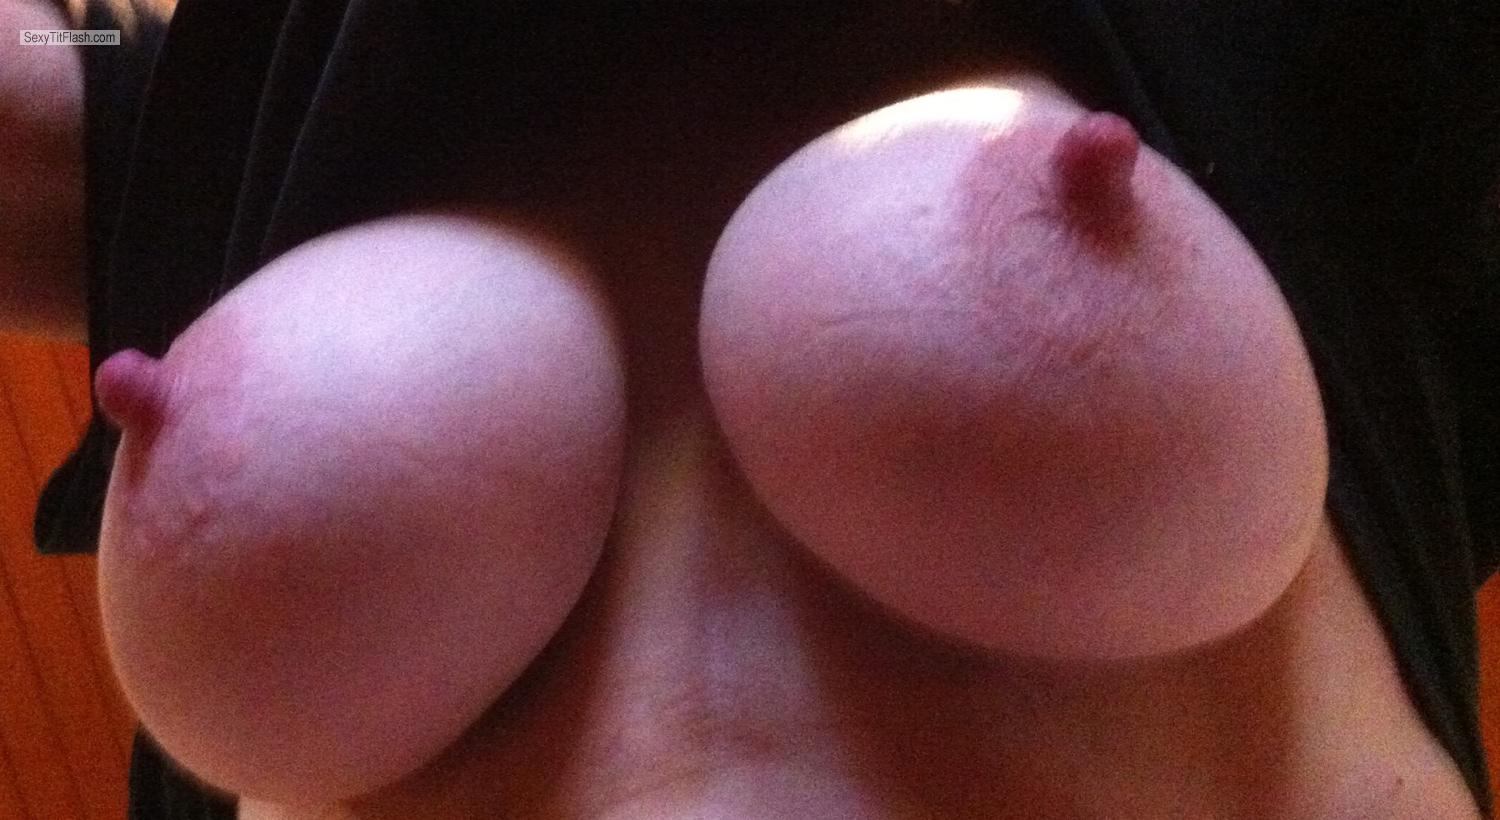 My Big Tits Selfie by Jessie